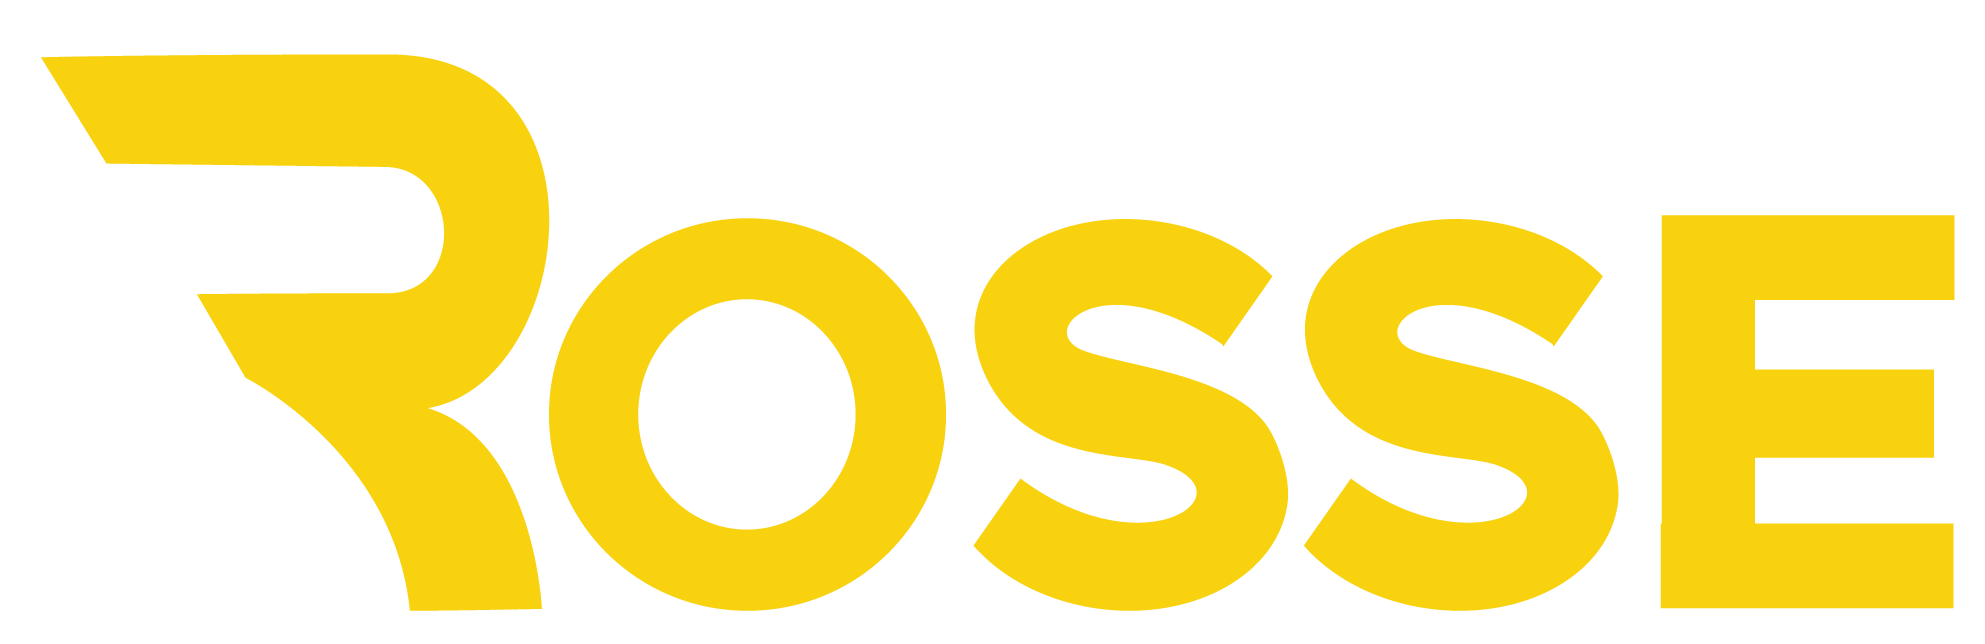 Logo Rosse